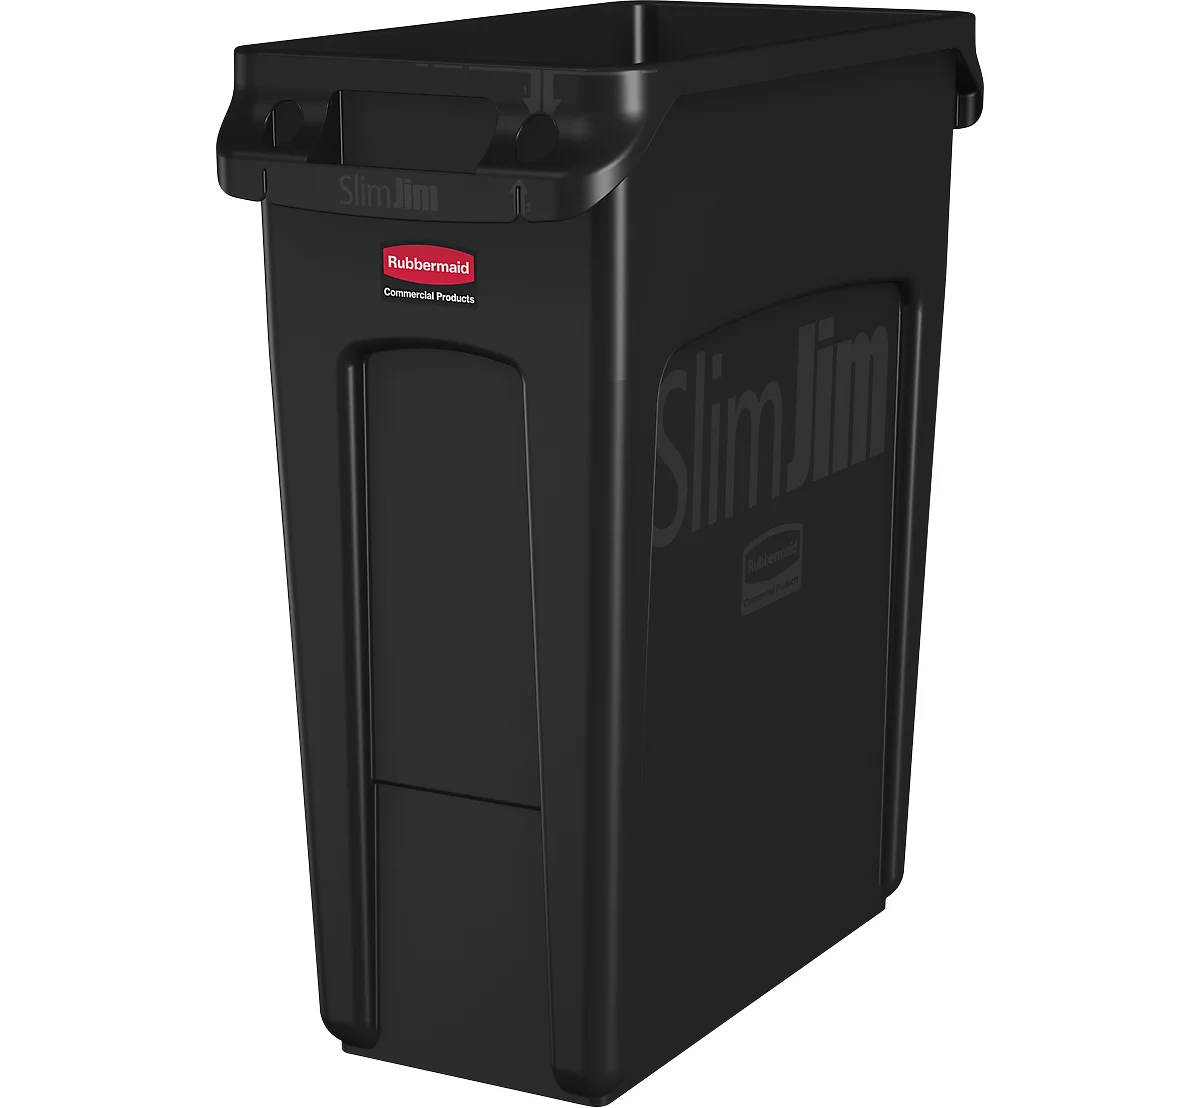 Cubo de basura Slim Jim®, plástico, capacidad 60 l, negro